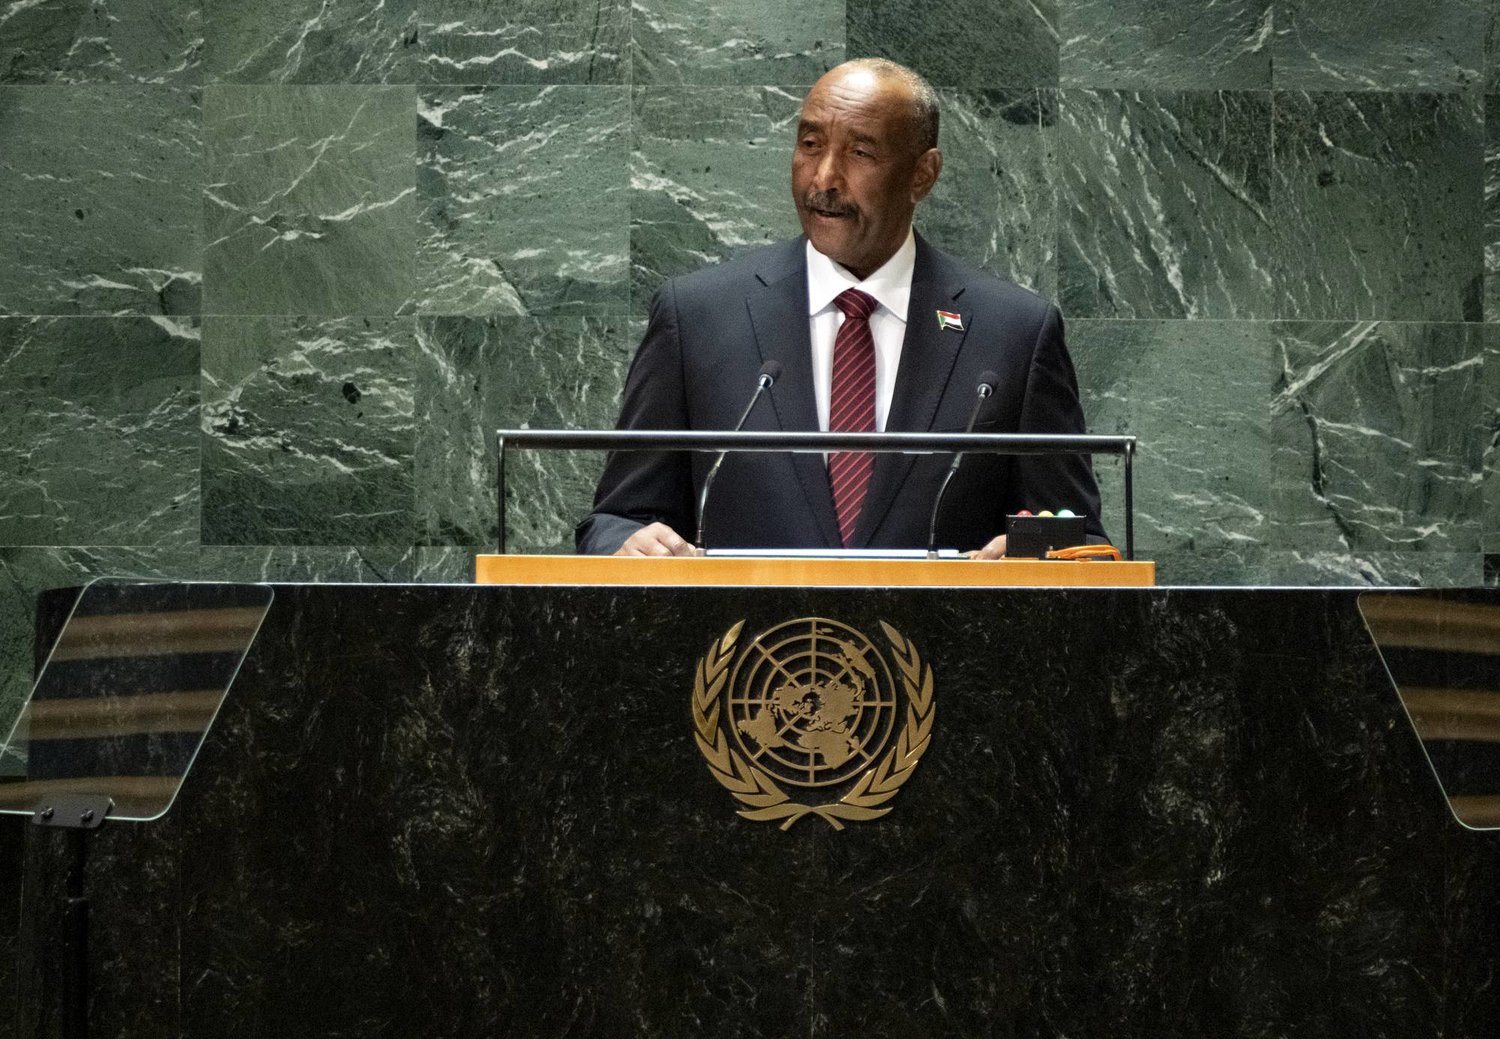  البرهان خلال إلقاء كلمته أمام الجمعية العامة للأمم المتحدة (أ.ب)